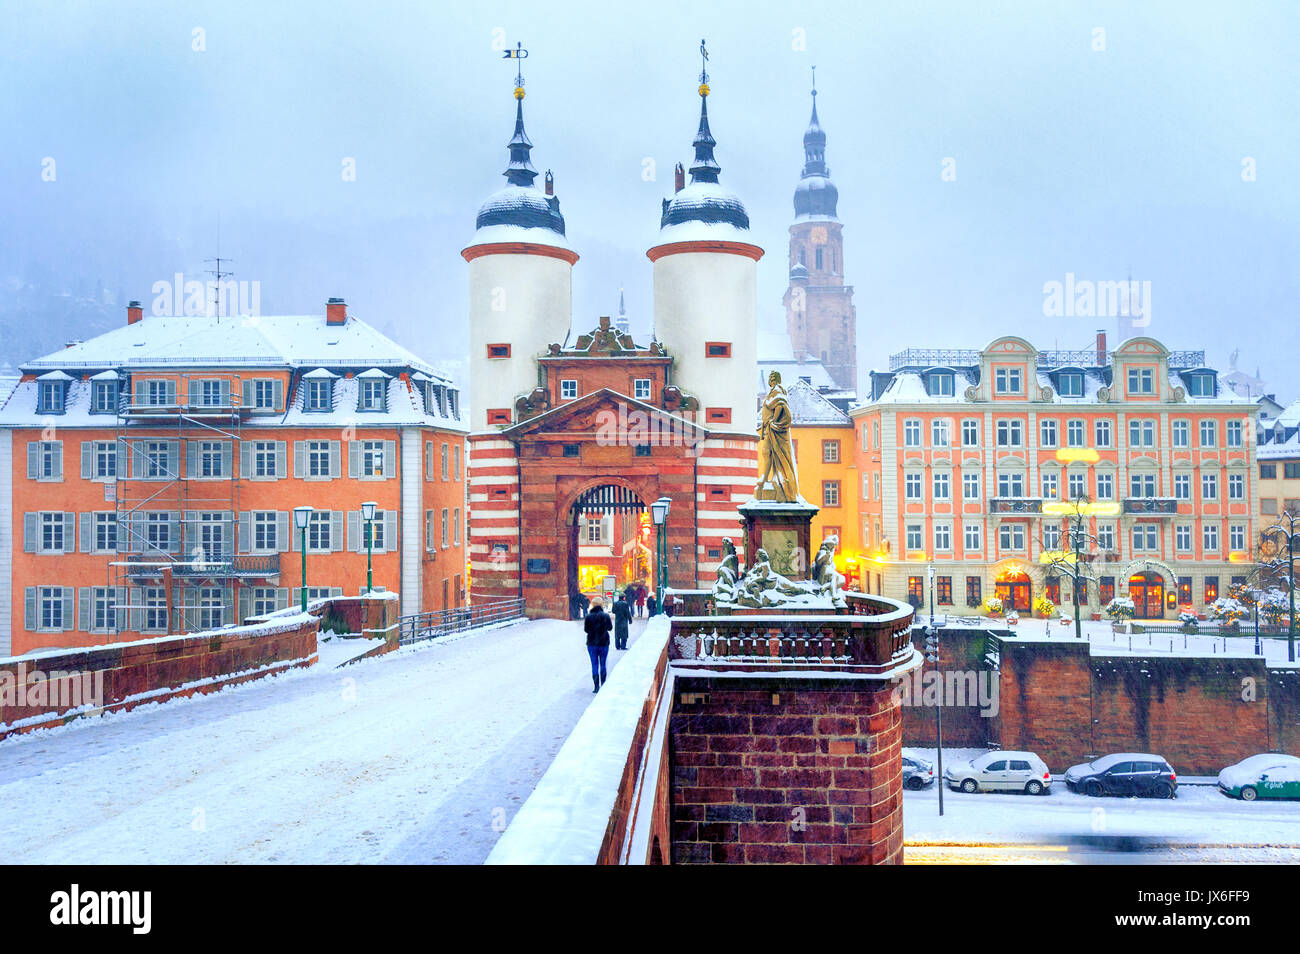 Malerische barocke Altstadt von Heidelberg, Deutschland, Snow White im Winter Stockfoto